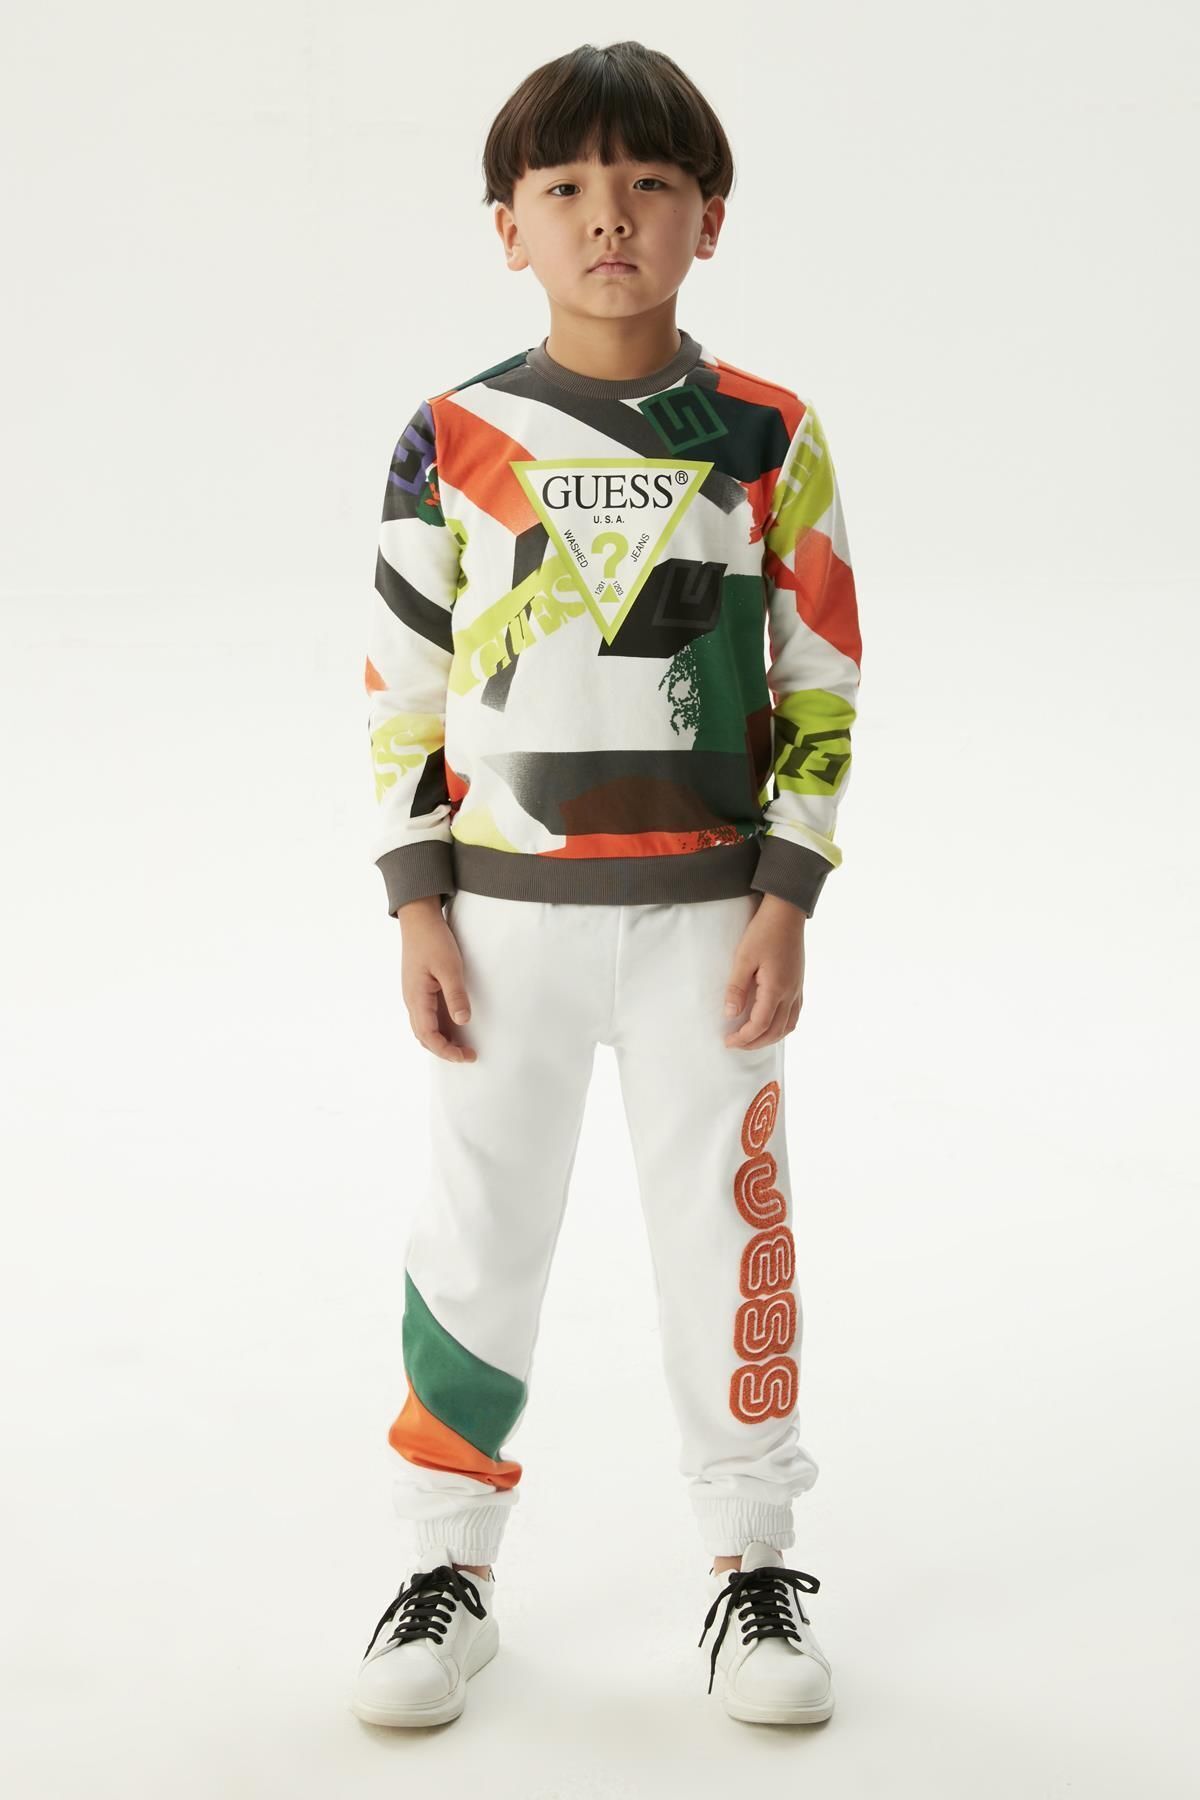 Guess BG Store Erkek Çocuk Renkli Sweatshirt